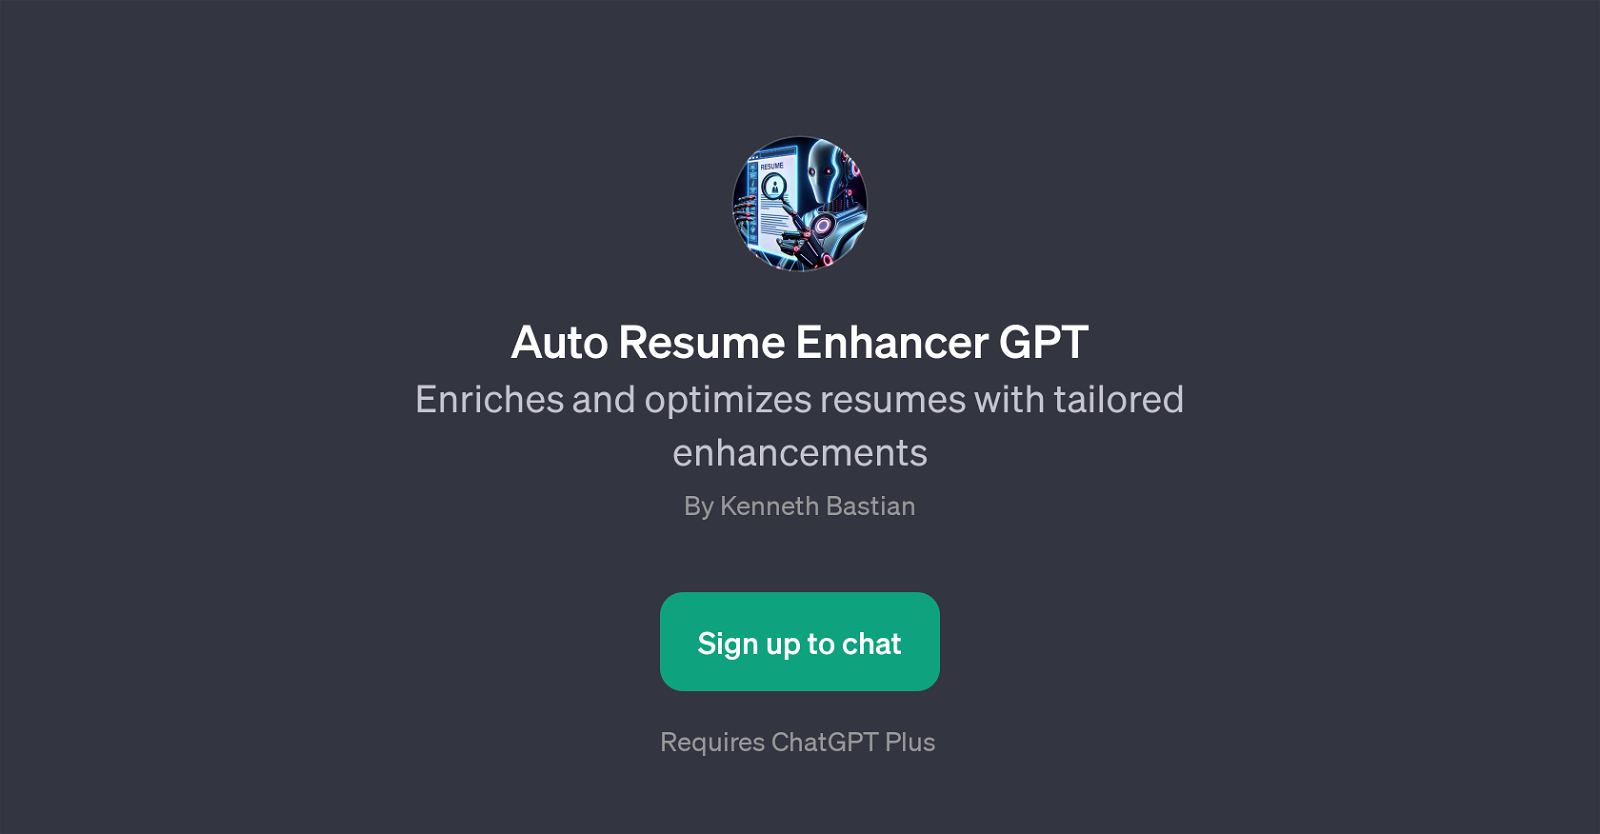 Auto Resume Enhancer GPT website